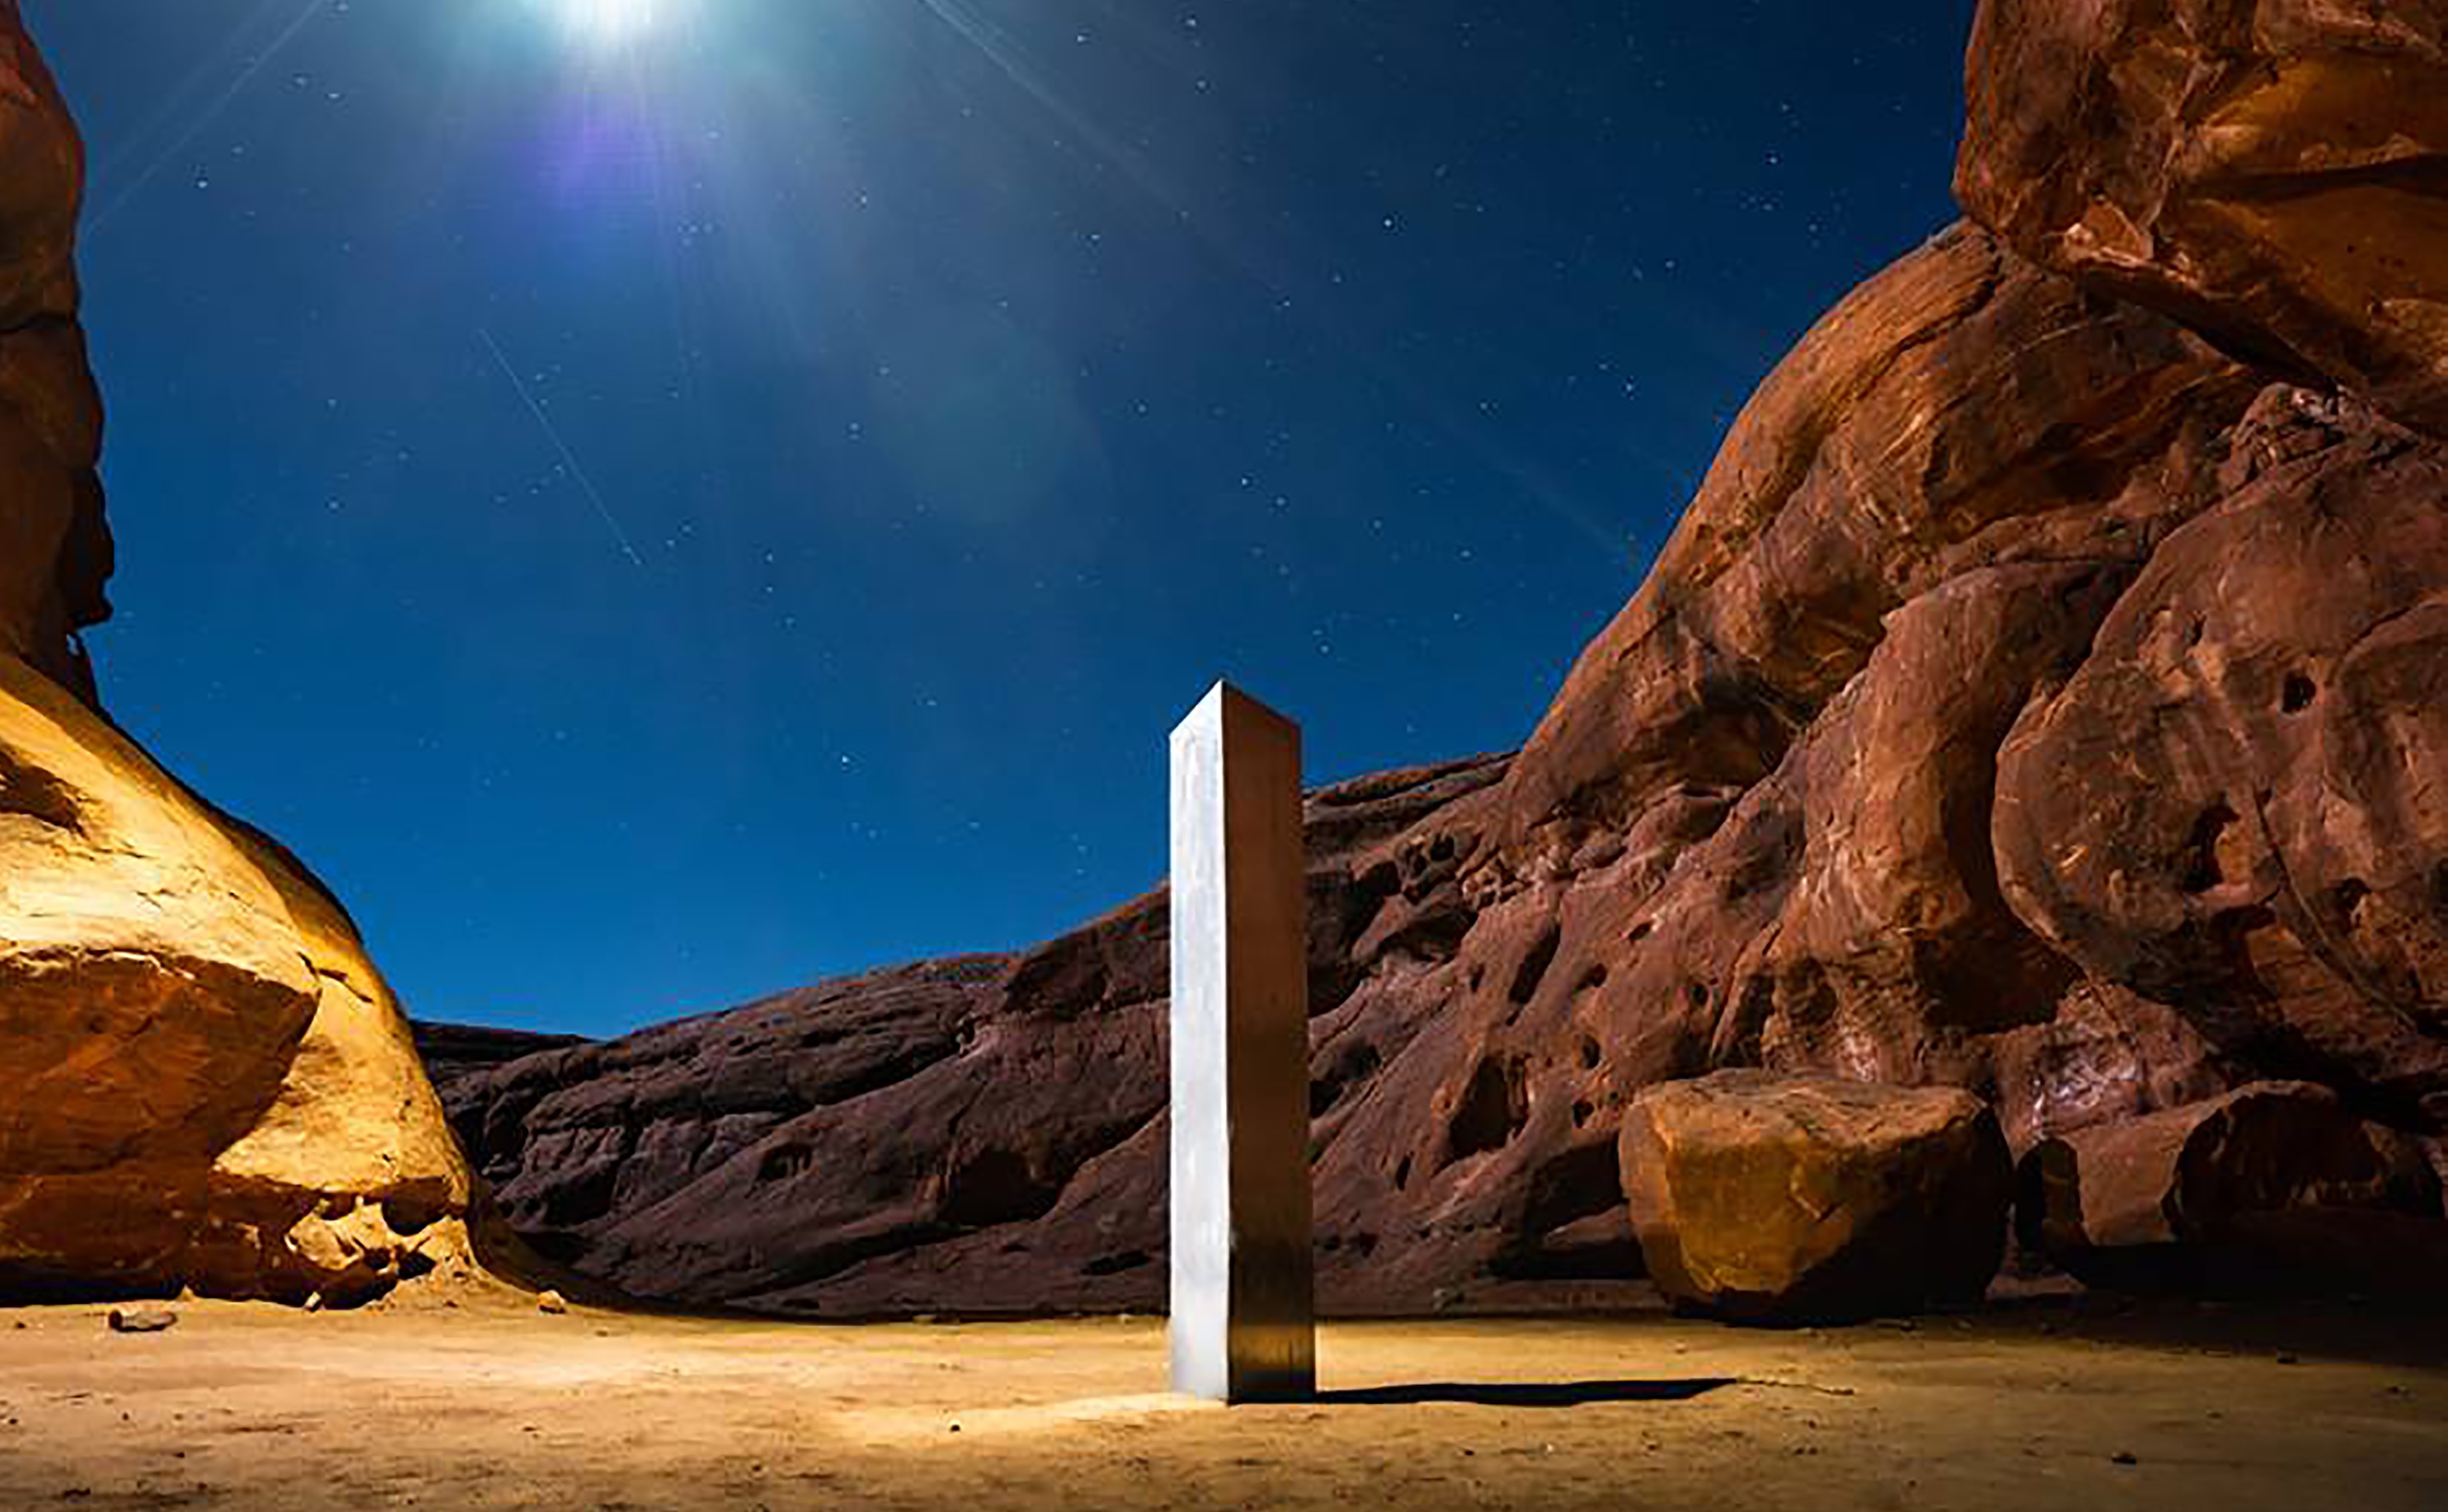 Monolit objavený uprostred pustiny v Utahu spôsobil na internete veľký rozruch.